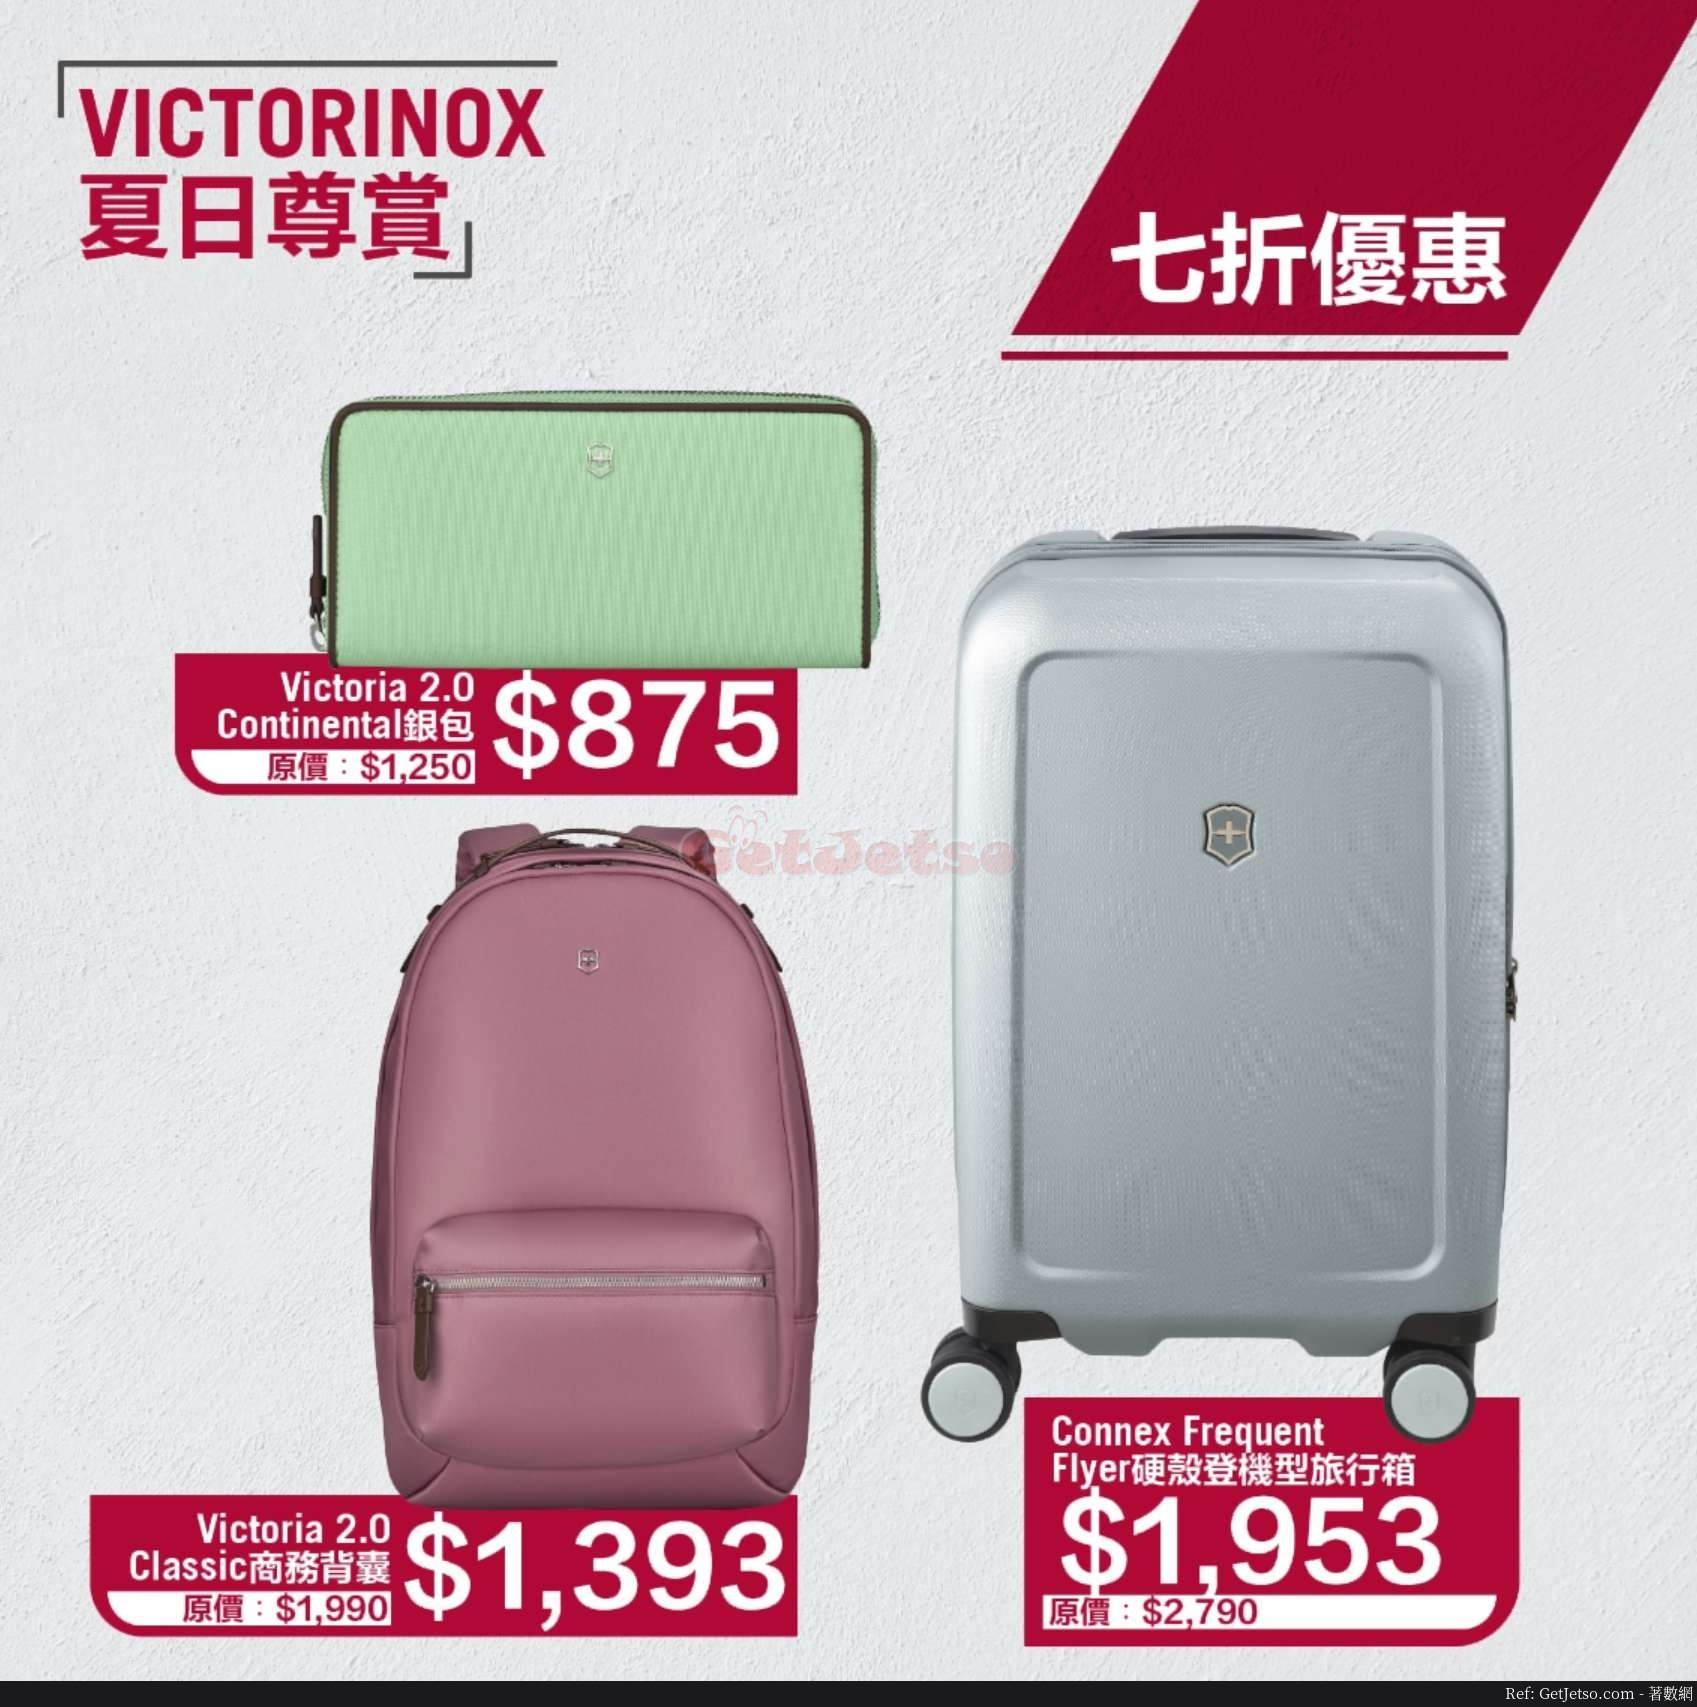 VICTORINOX低至5折減價優惠(20年6月10日起)圖片3